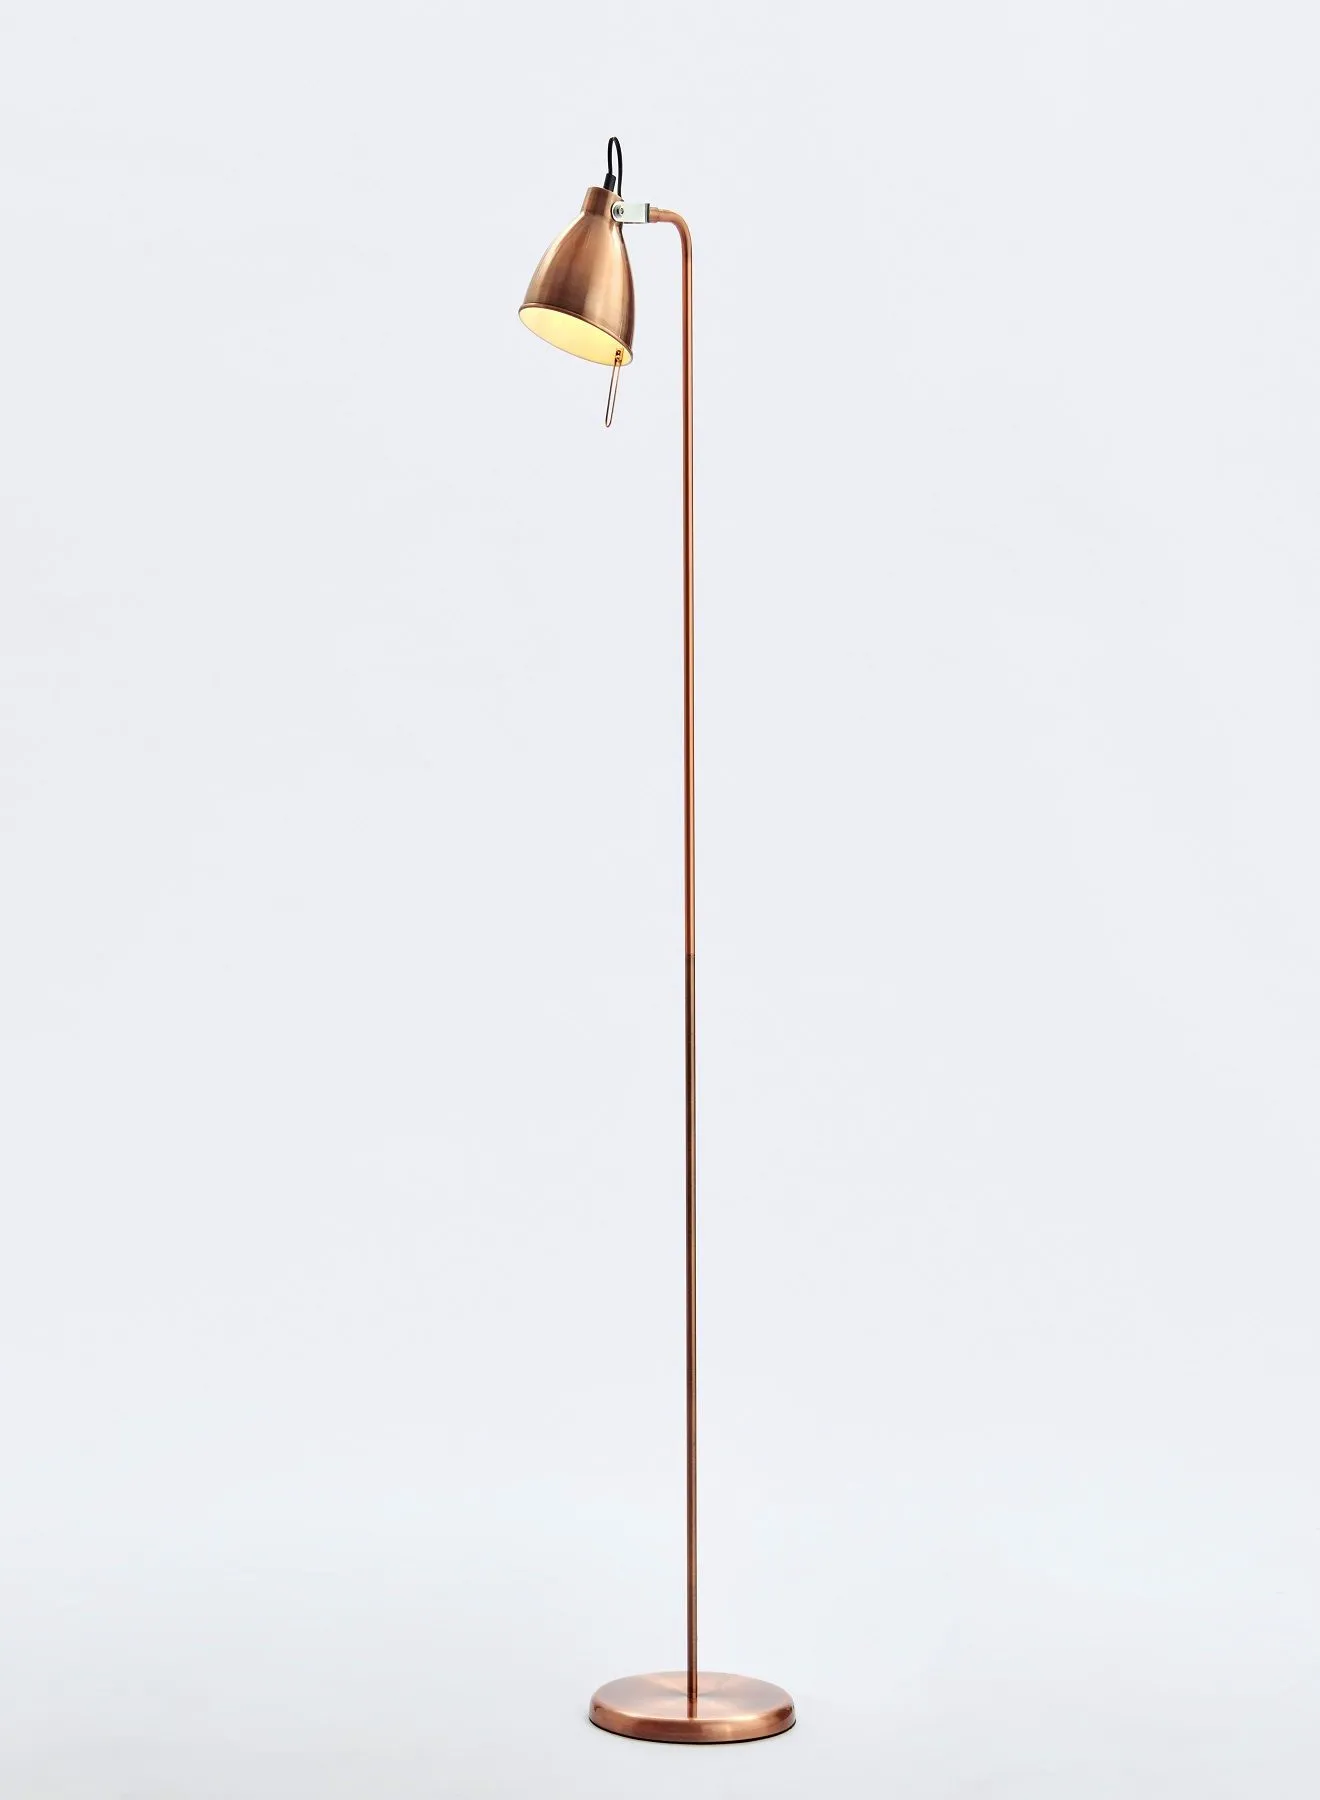 التبديل مصباح أرضي ديكور حديث فريد من نوعه مواد ذات جودة فاخرة للمنزل الأنيق المثالي FL528010 أحمر / أسود 32X19XH81.5cm